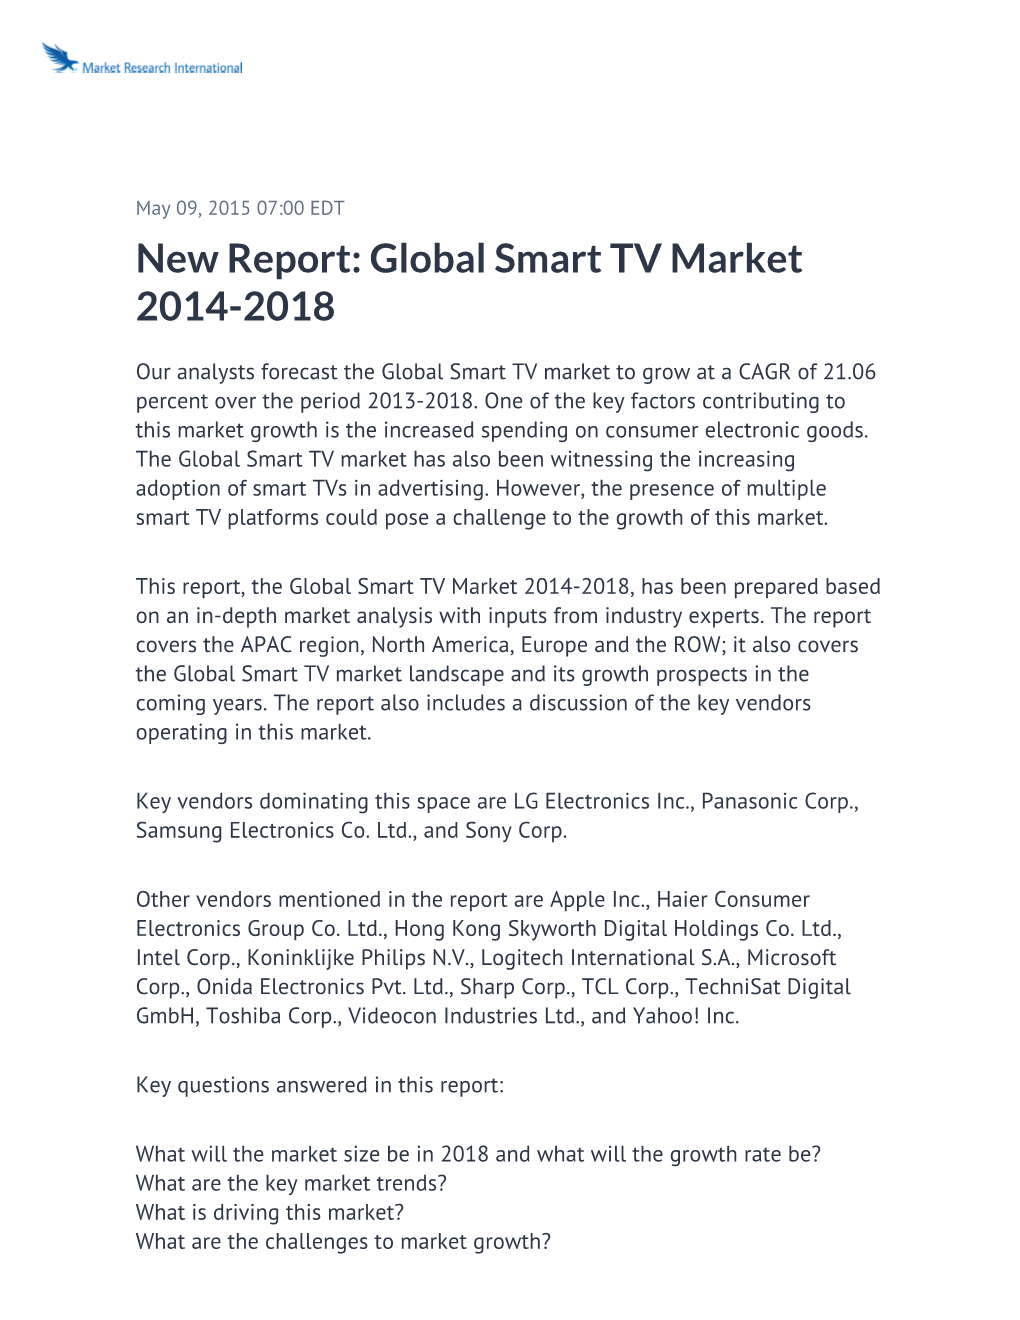 New Report: Global Smart TV Market 2014-2018